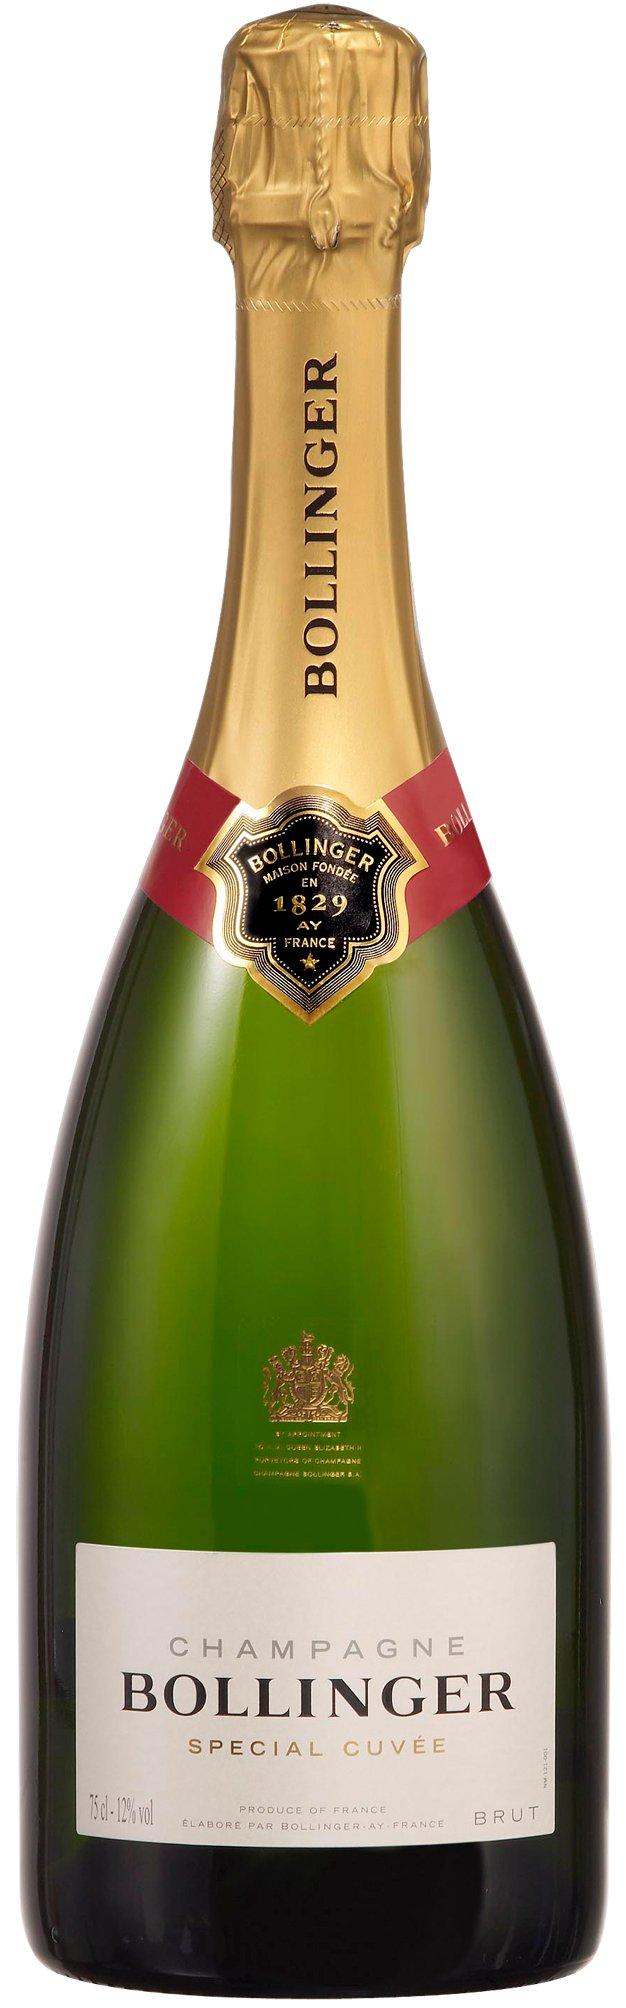 Image of Champagne Bollinger Bollinger Special Cuvée Champagne Brut